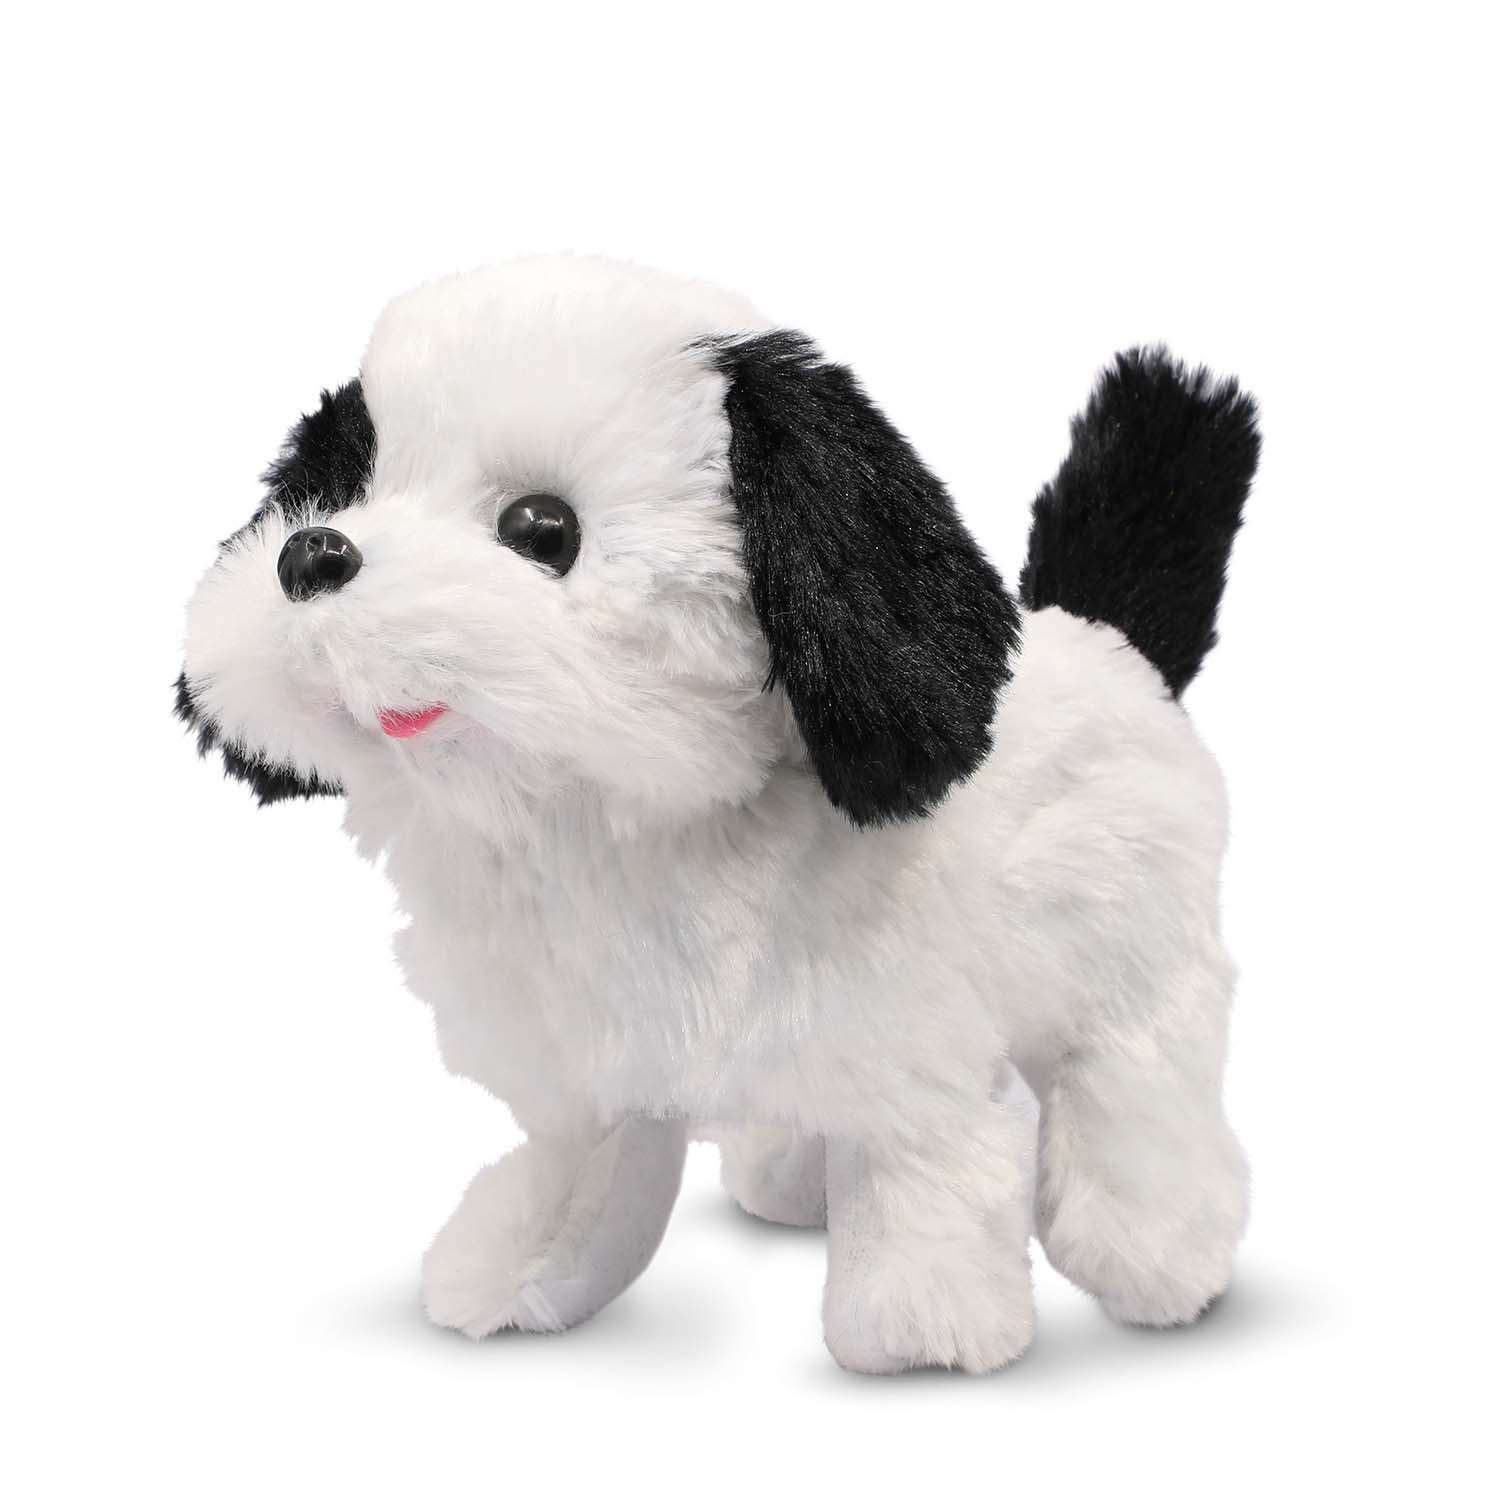 Игрушка интерактивная Mioshi Весёлый щеночек бело-чёрный - фото 1